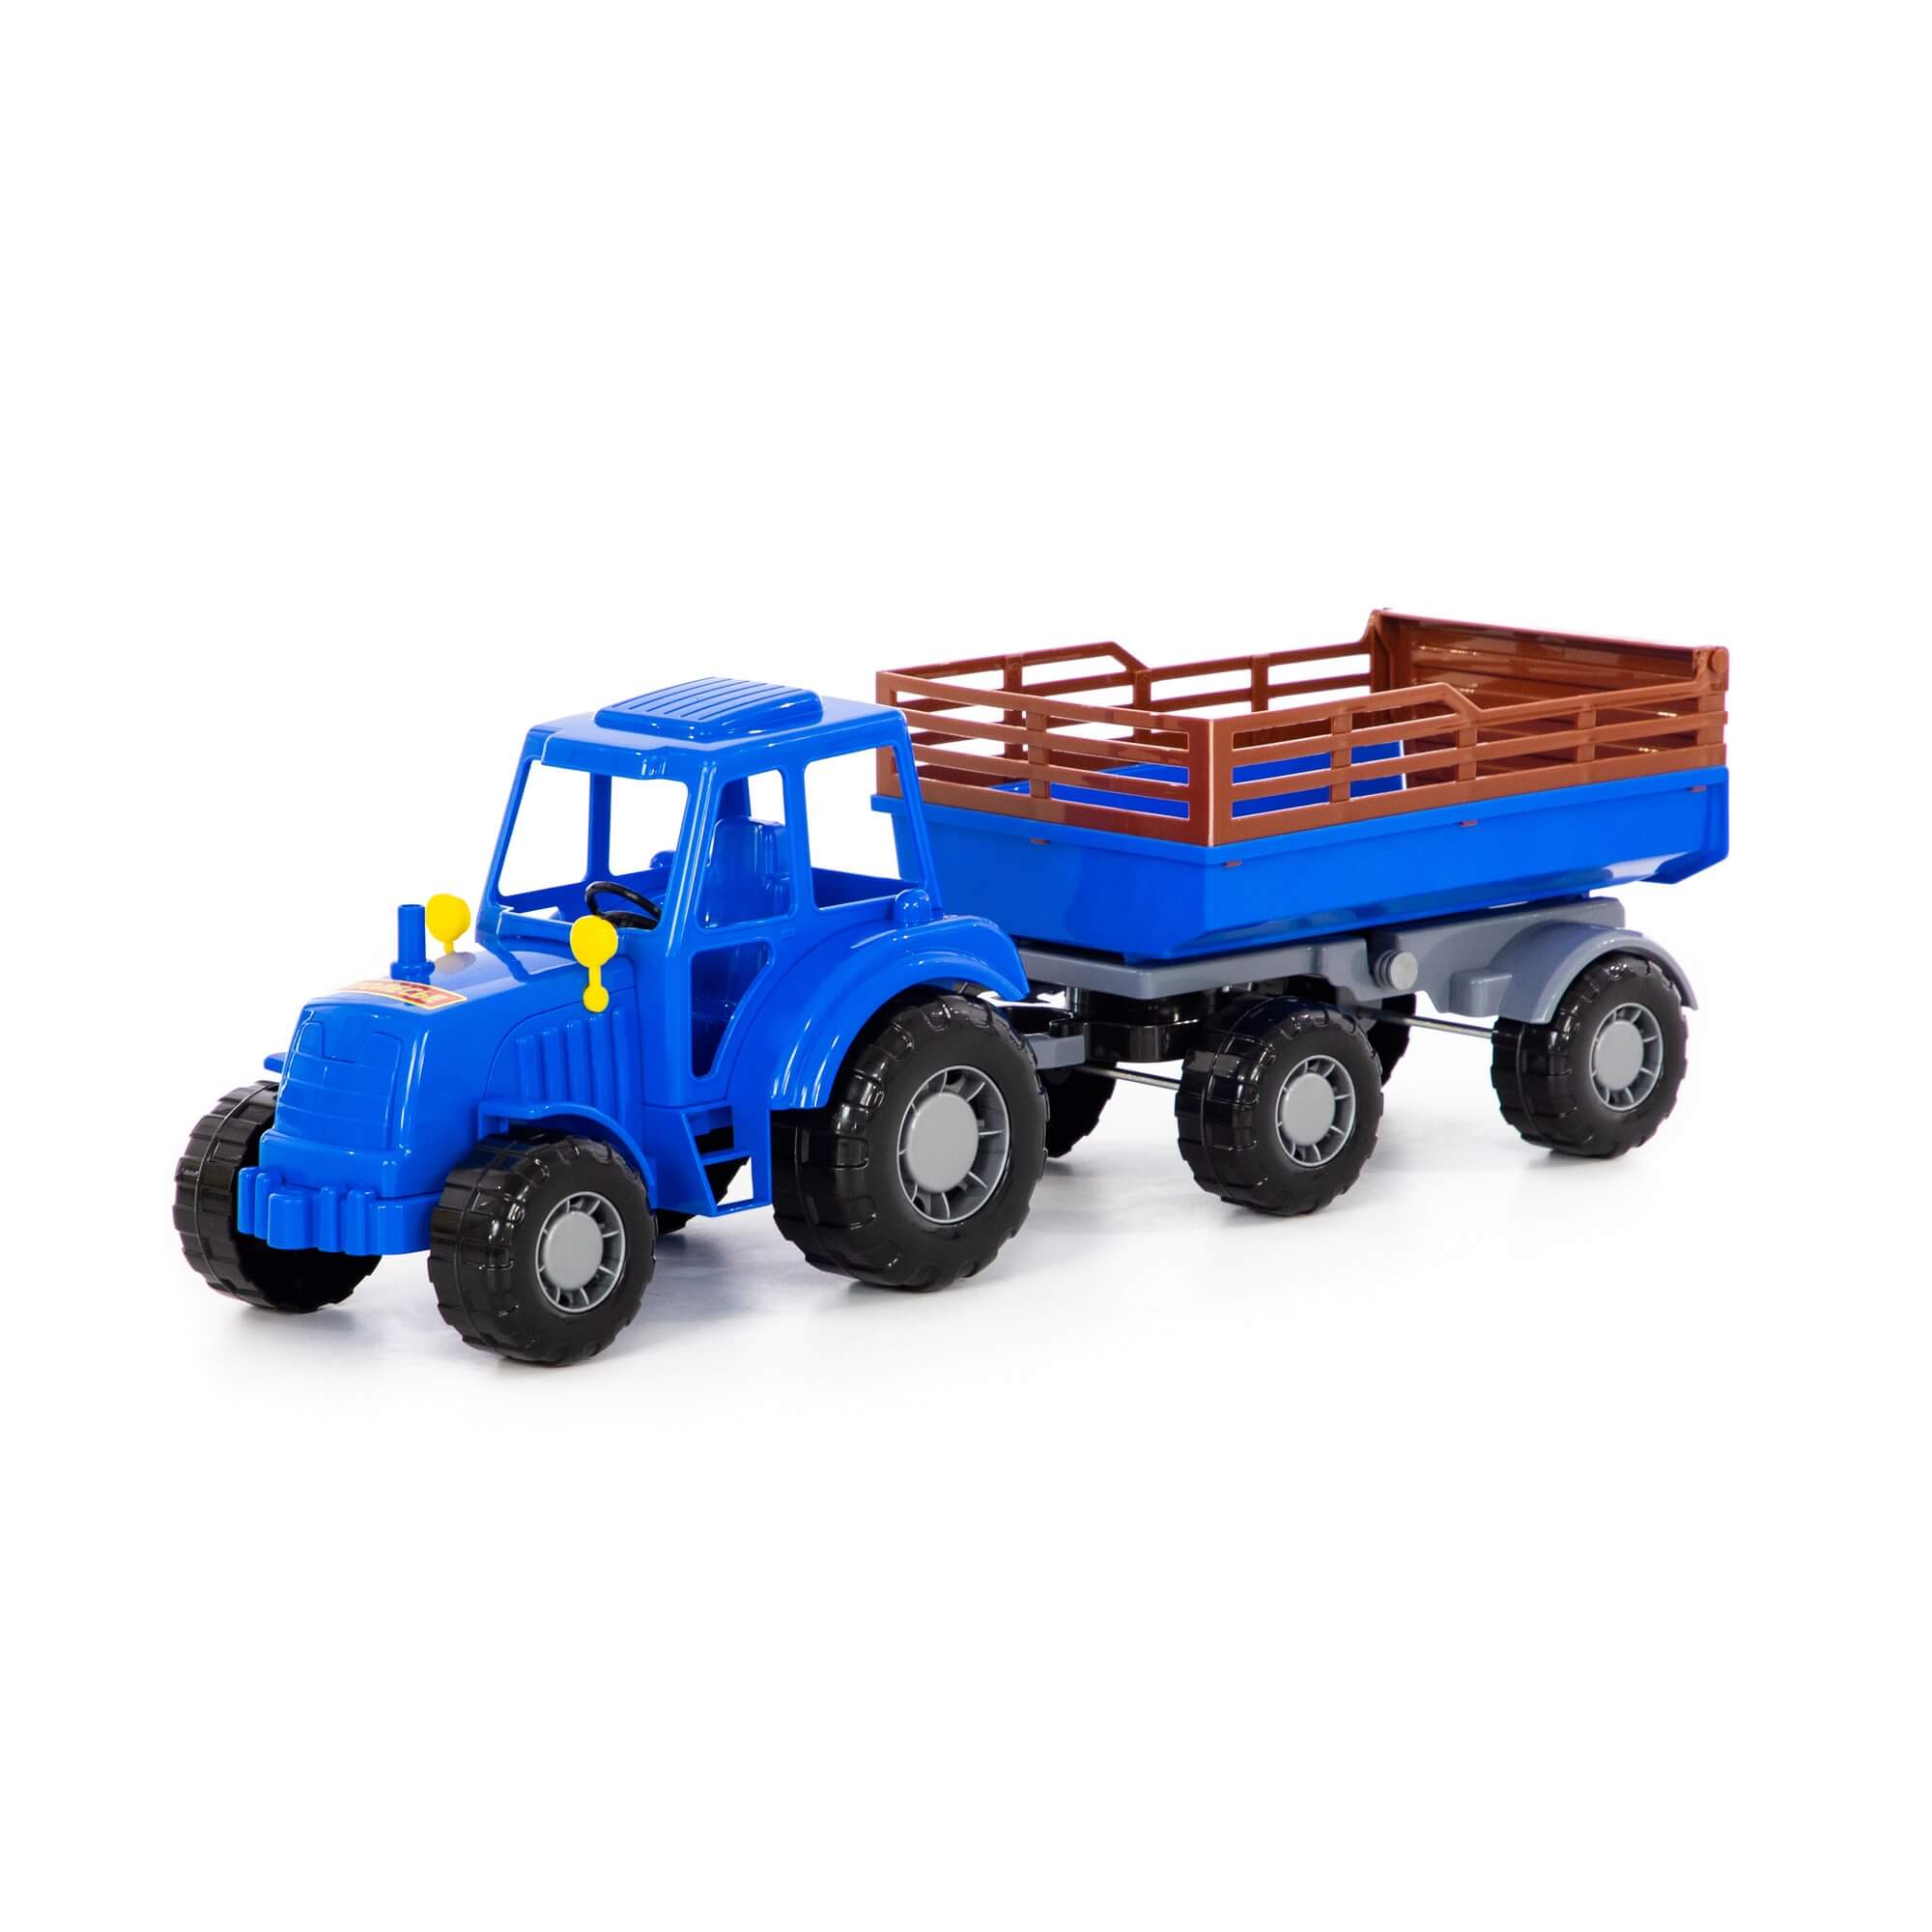 Трактор Алтай с прицепом №2 (синий) Полесье трактор полесье алтай п 35325